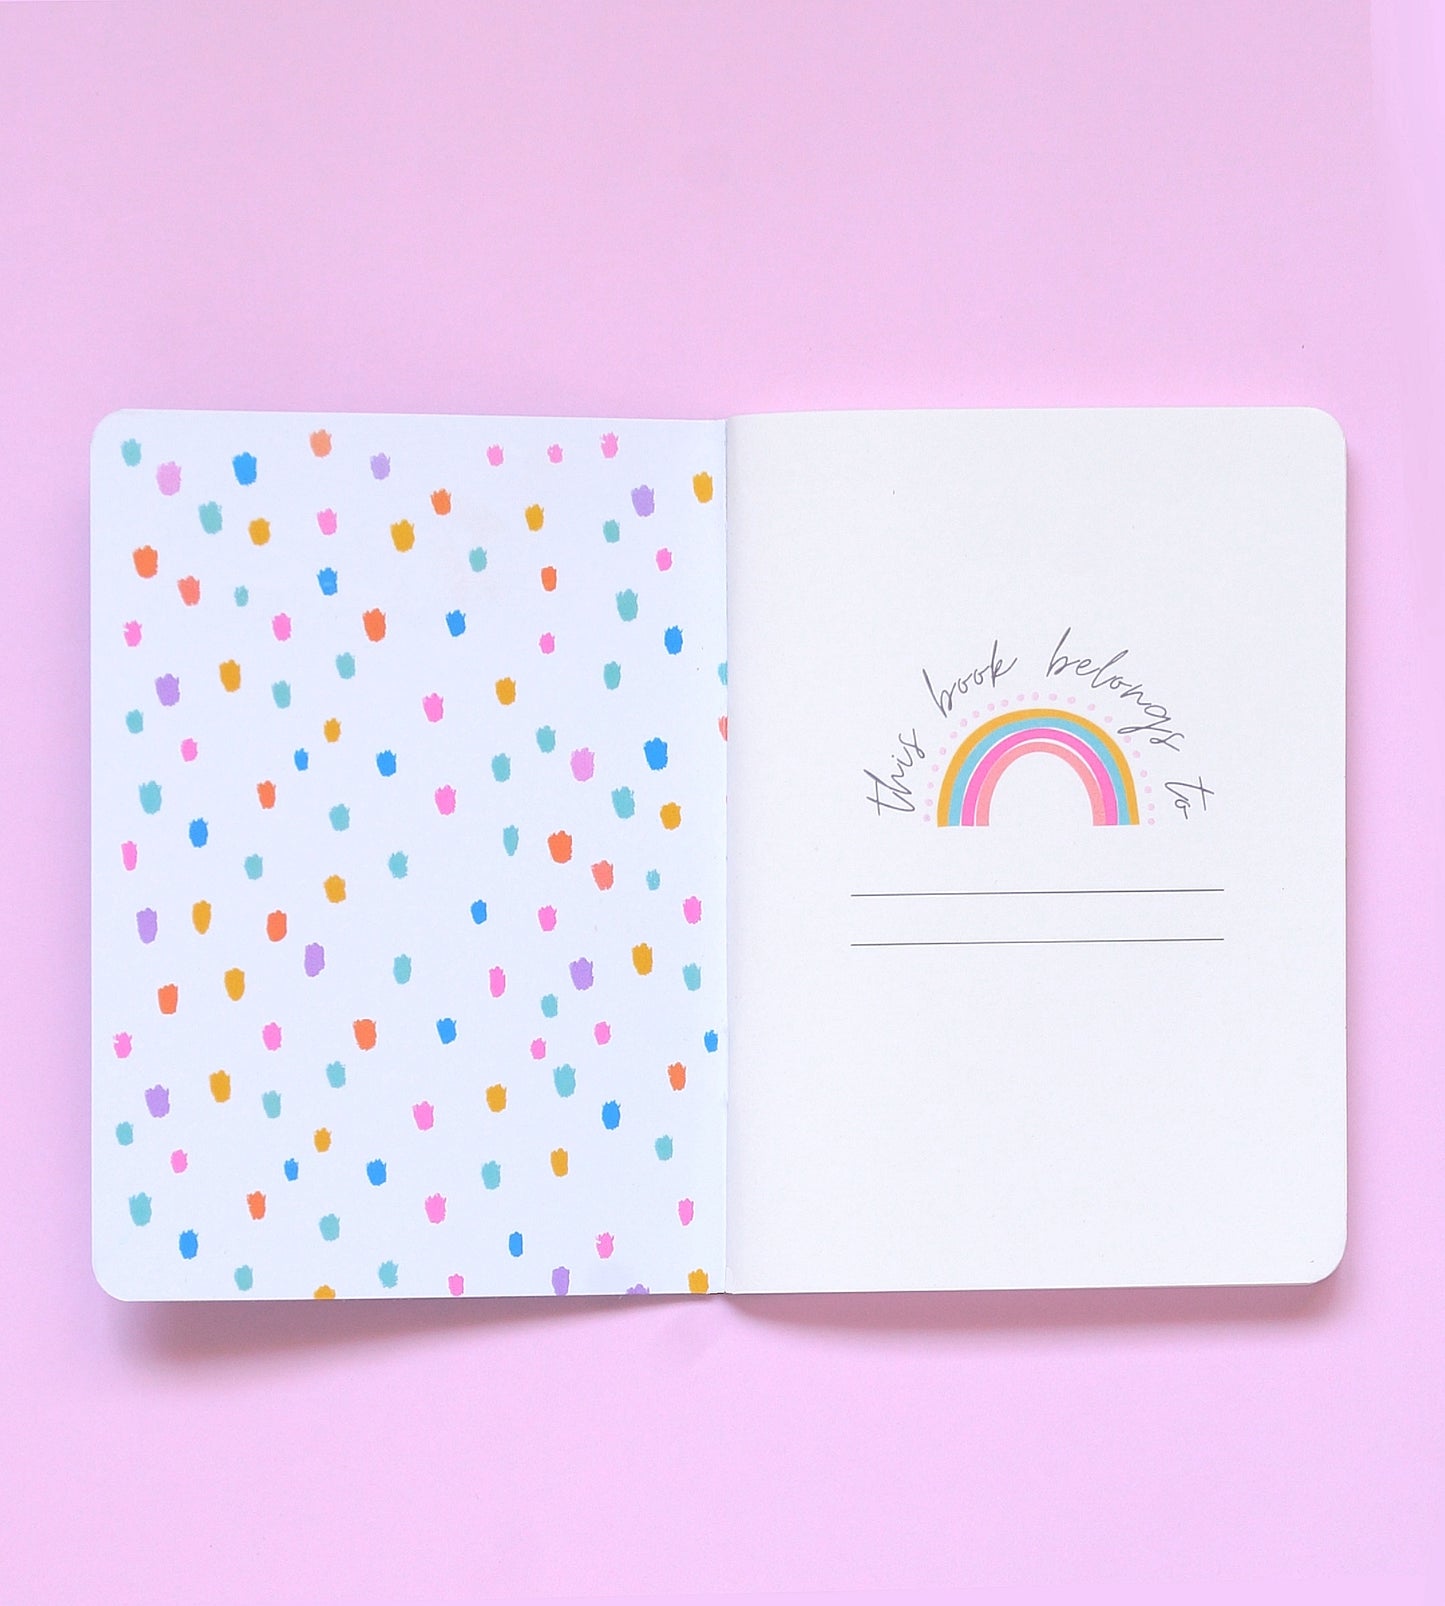 Rainbow Stripes | Plain Pages